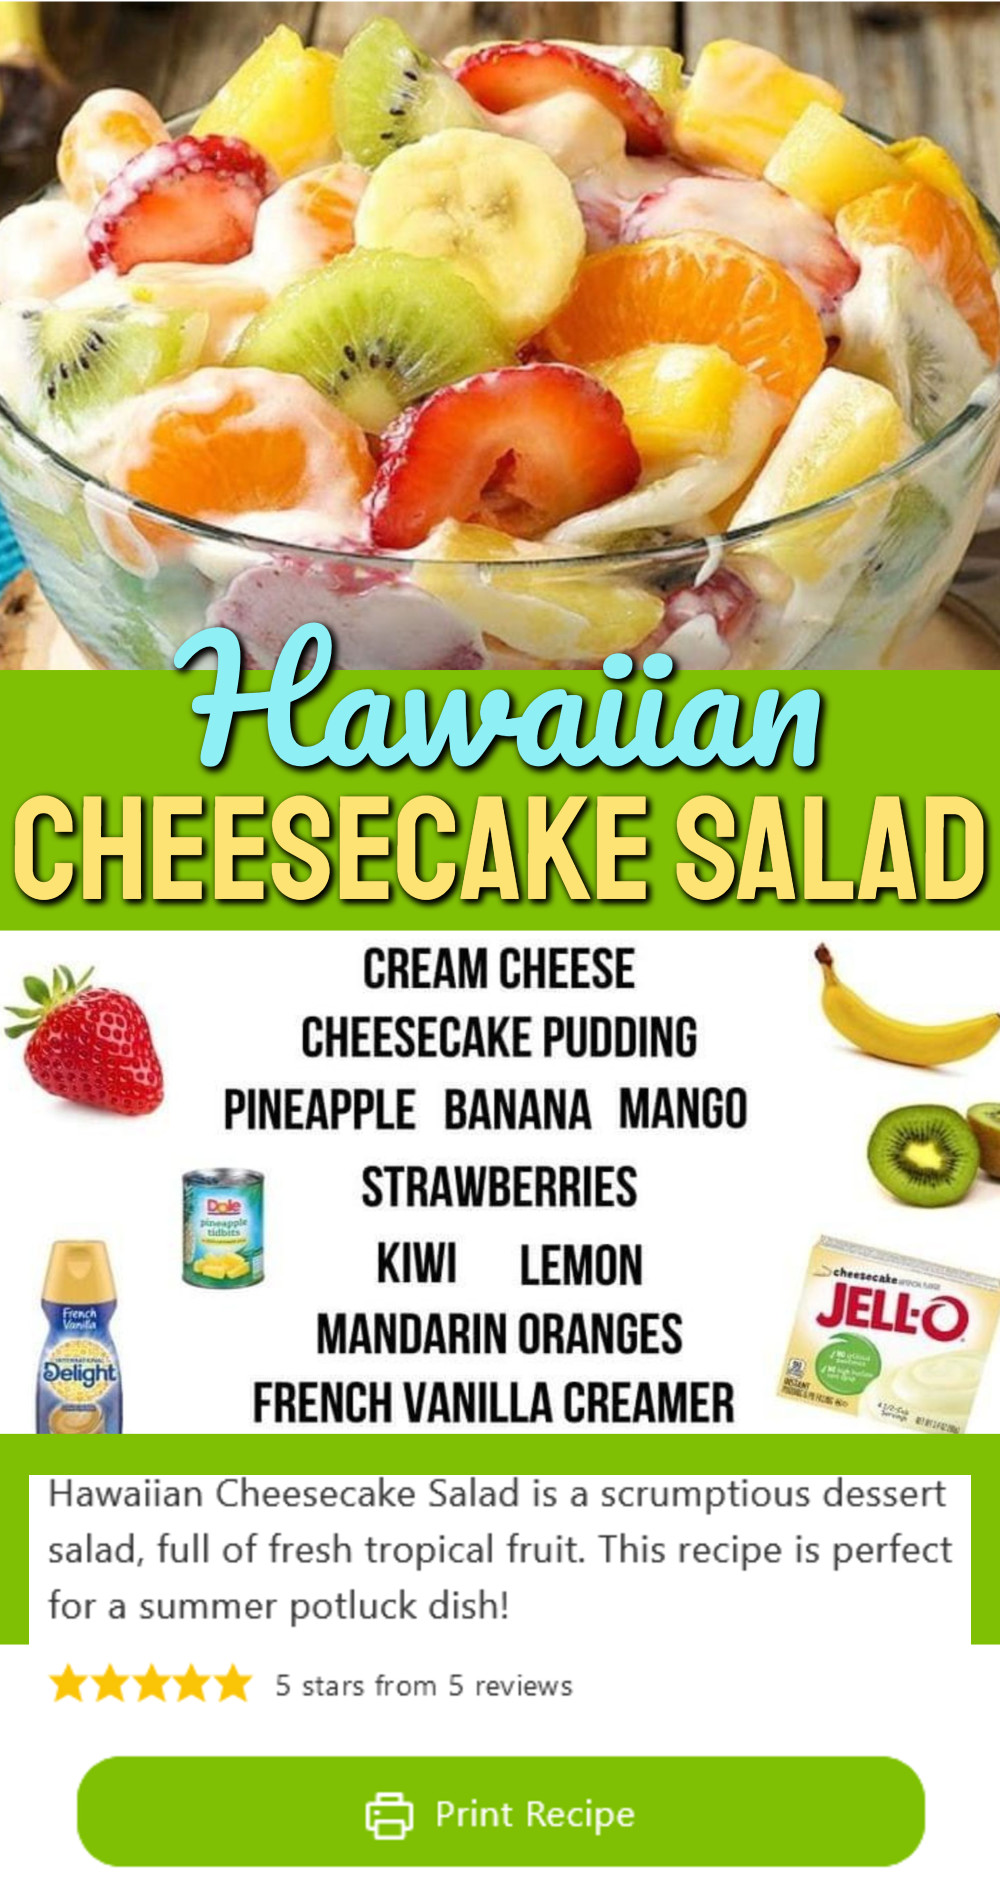 Hawaiian Cheesecake salad recipe